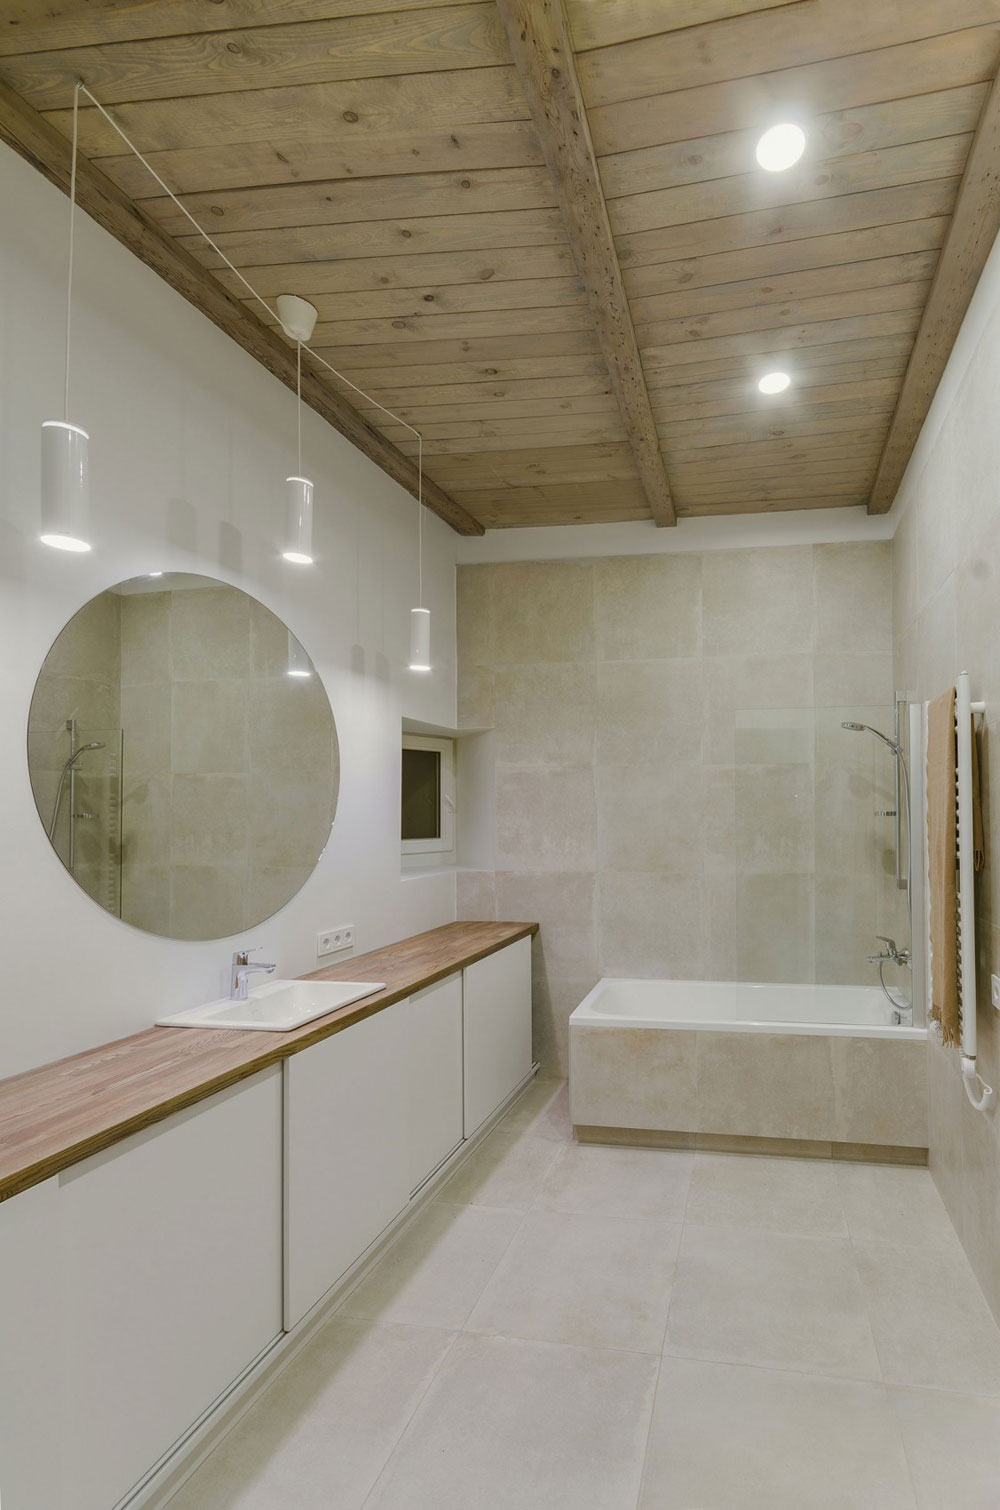 Letar du efter inspiration för modern badrumsinredning-1 Letar du efter inspiration för modern badrumsinredning?